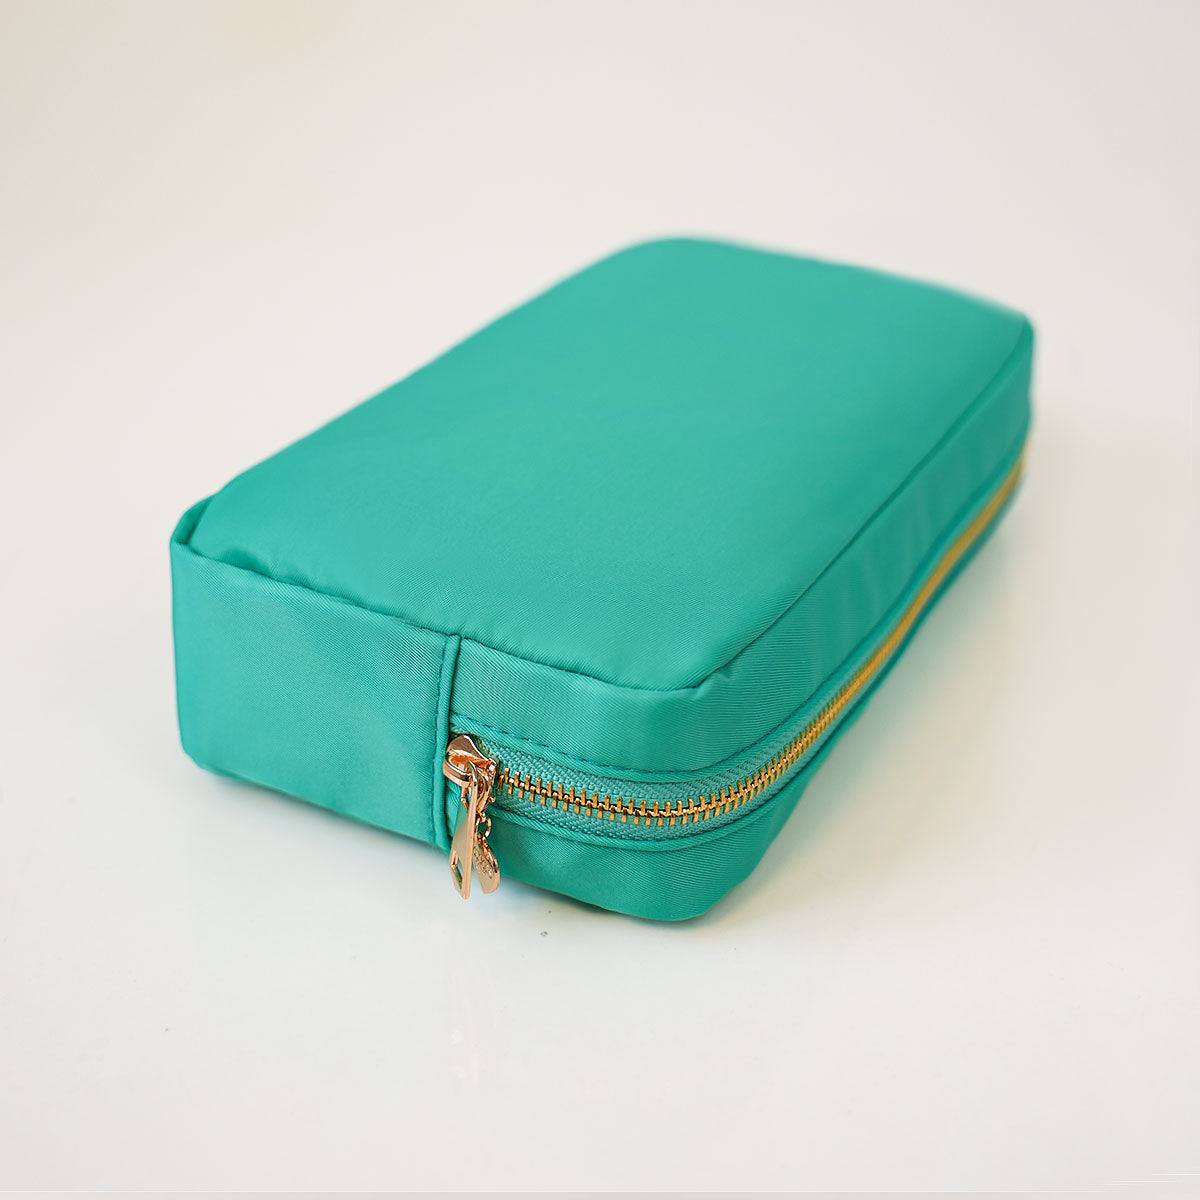 Taschen-Set Nr. 3 Smaragd Grün (2 Taschen)